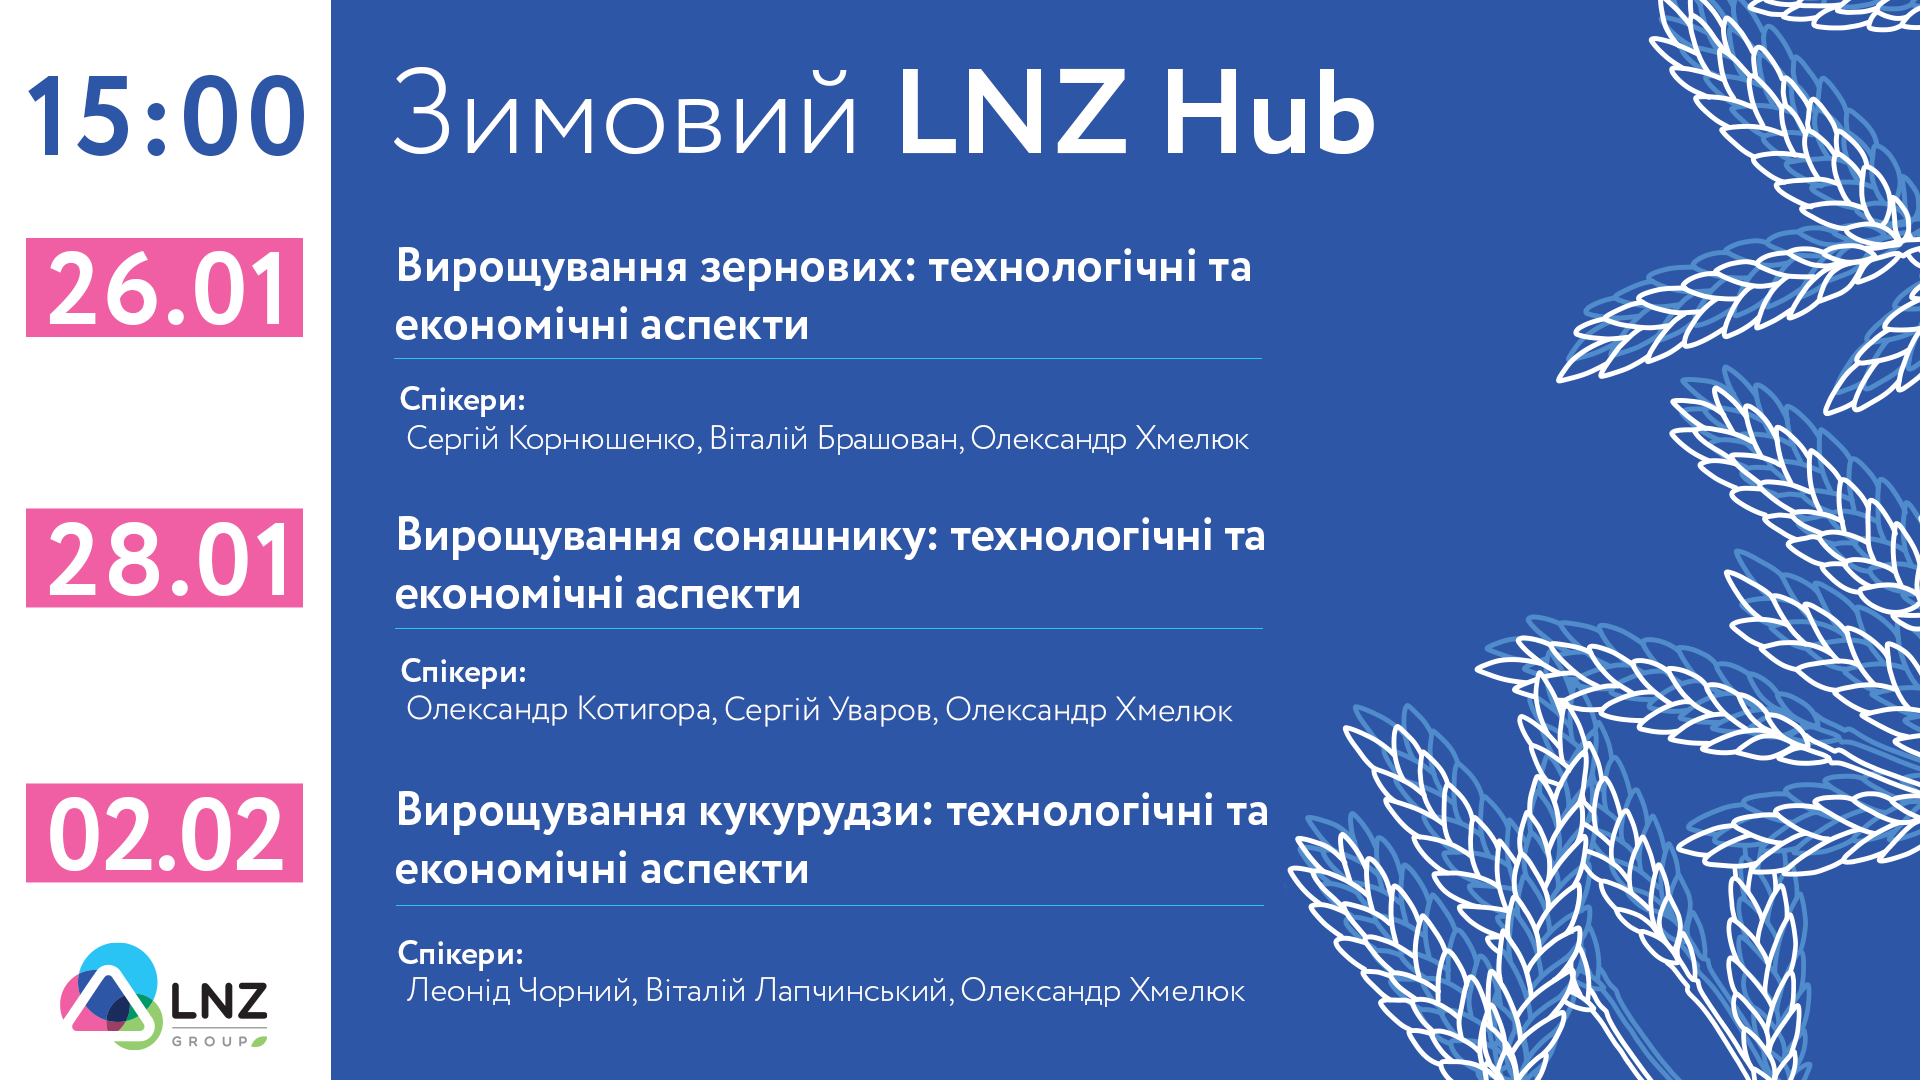 LNZ Group проведе серію конференцій про технології вирощування сільгоспкультур фото 1 LNZ Group